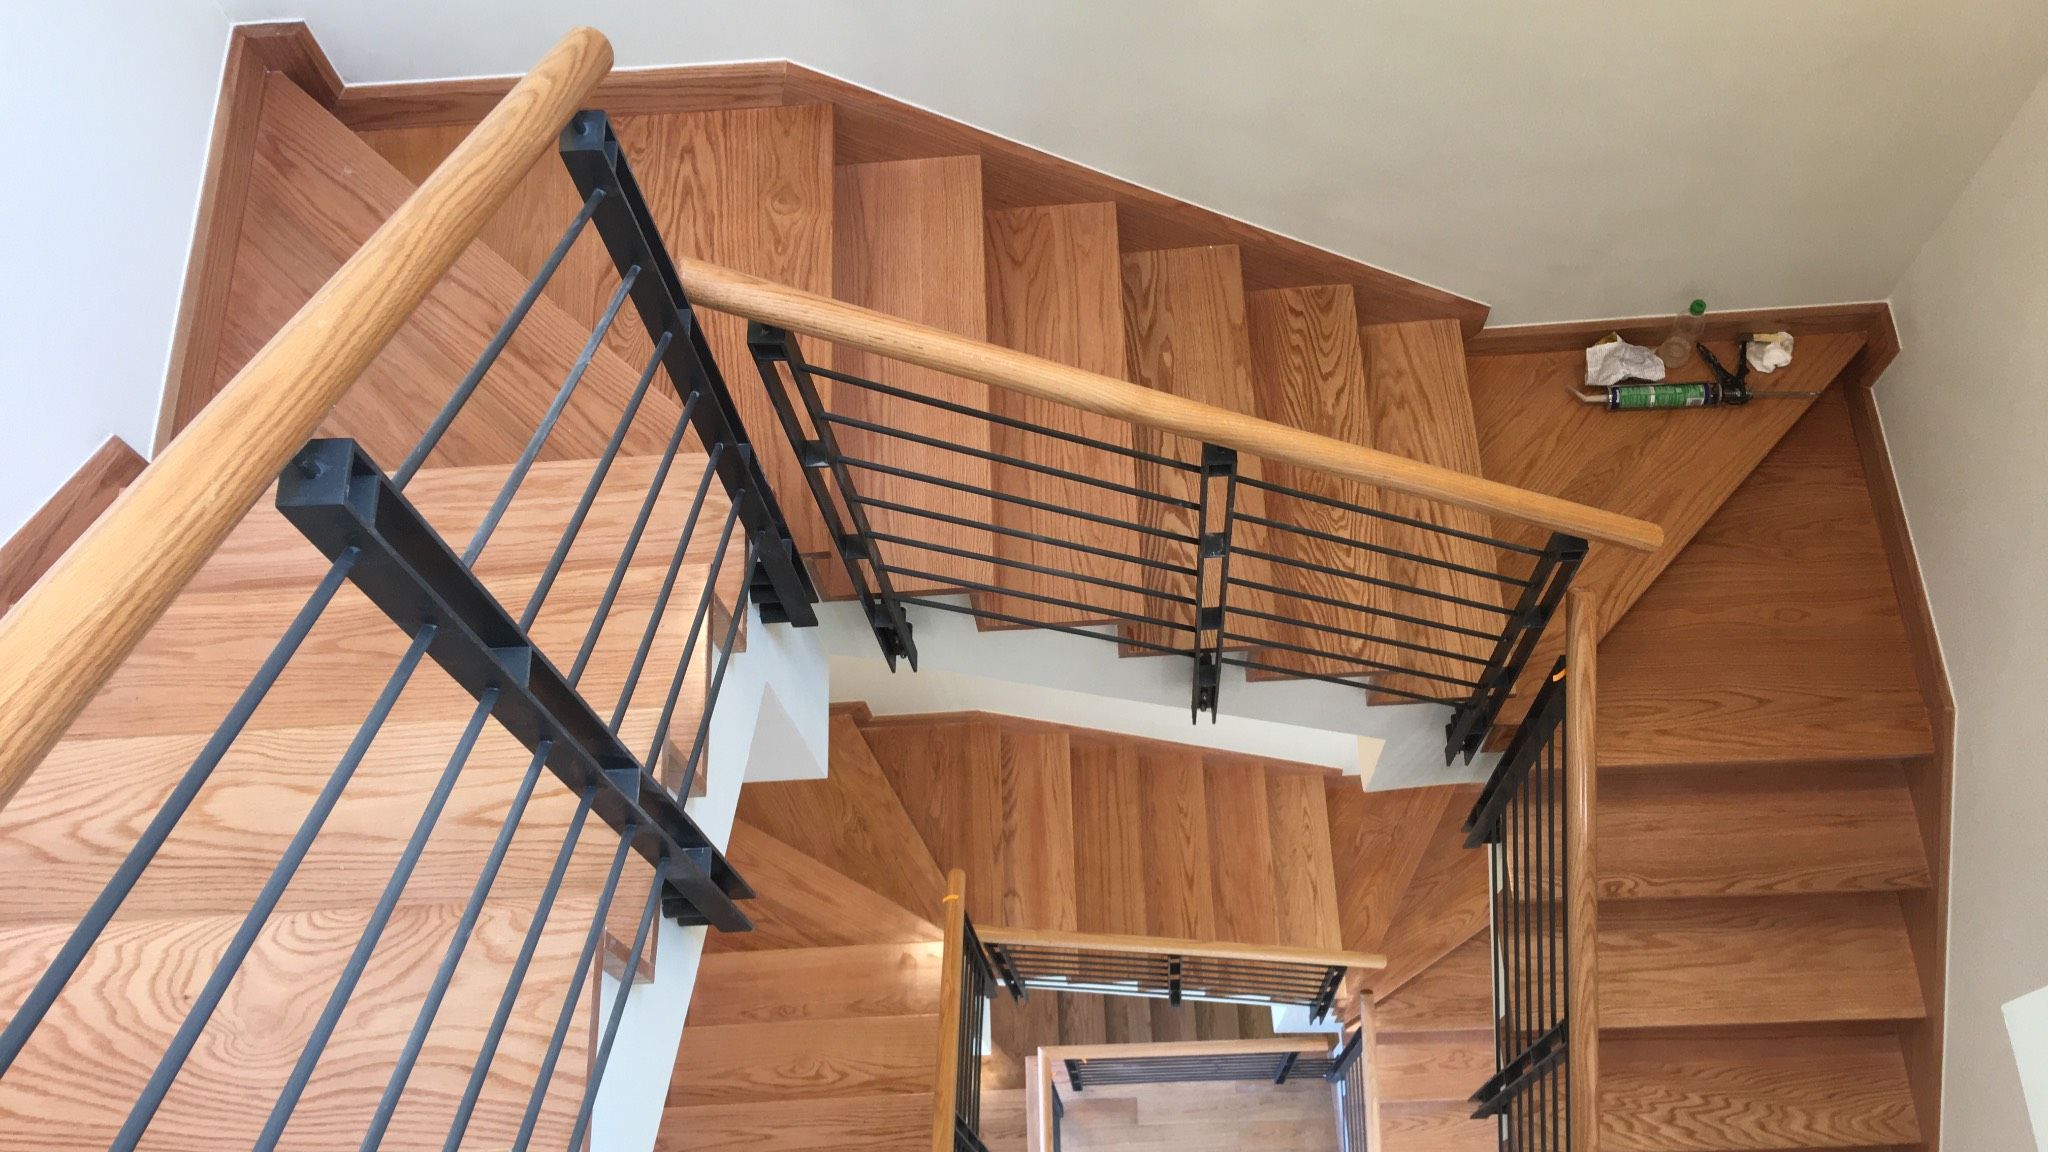 Cầu thang gỗ sồi tự nhiên - Với đường nét mềm mại và chất liệu bền bỉ, tạo điểm nhấn đẹp mắt và an toàn cho không gian nhà.